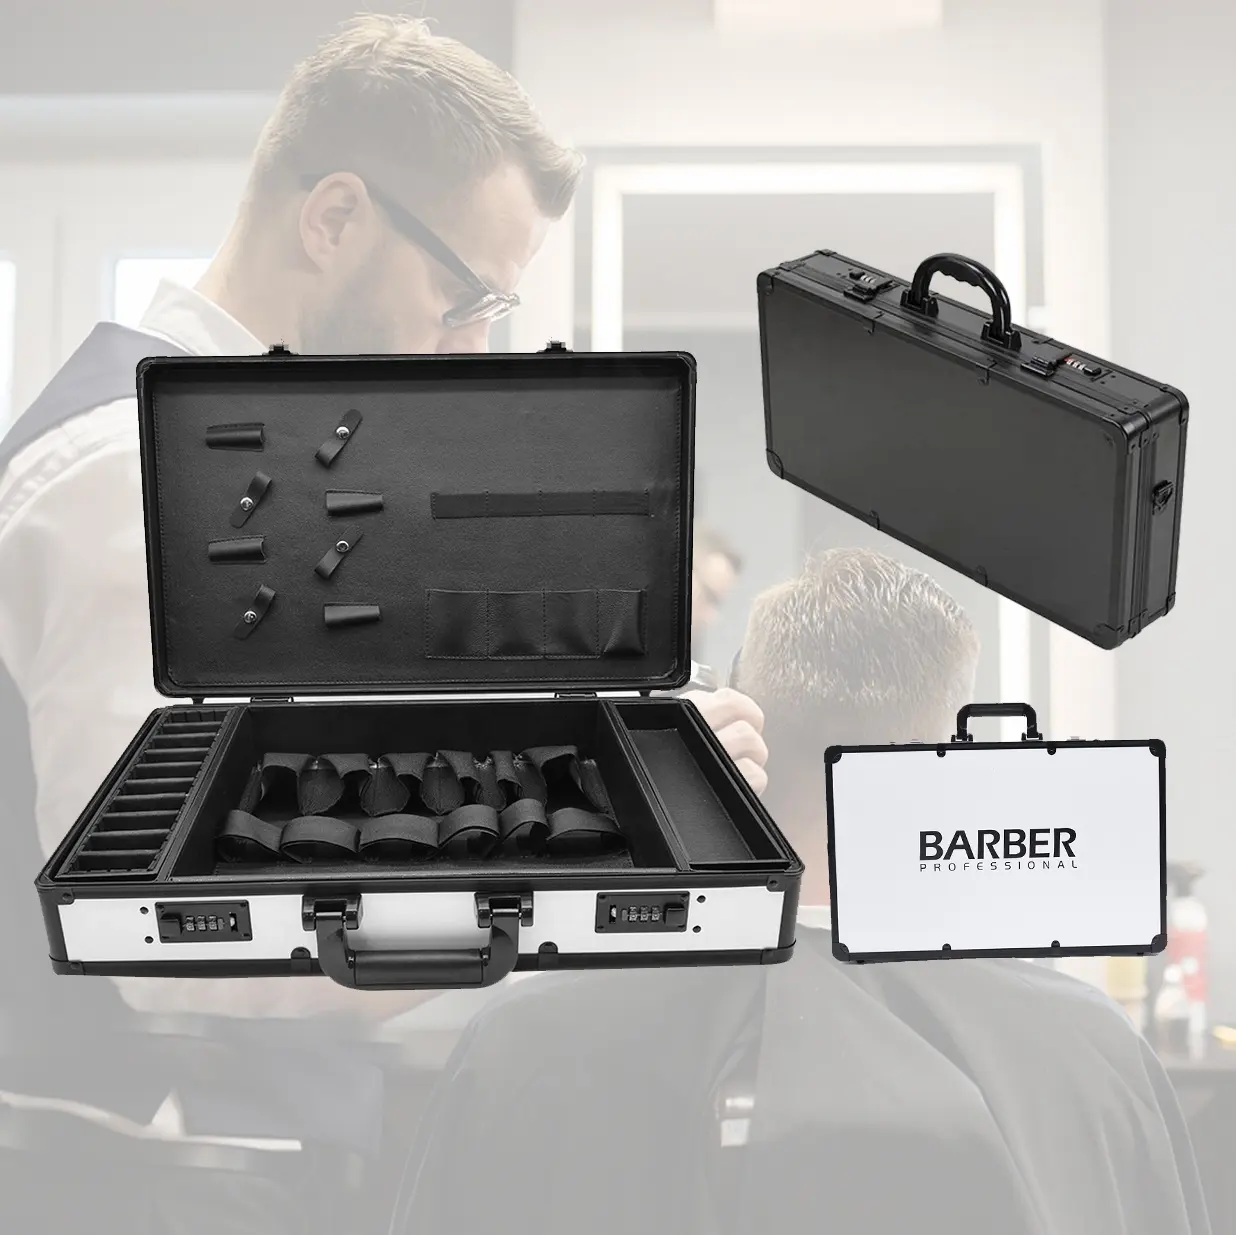 المهنية أدوات الحلاق حقيبة شعار مخصص المحمولة الألومنيوم باربيريا مربع Barberio حقيبة مع كلمات المرور/مفتاح قفل